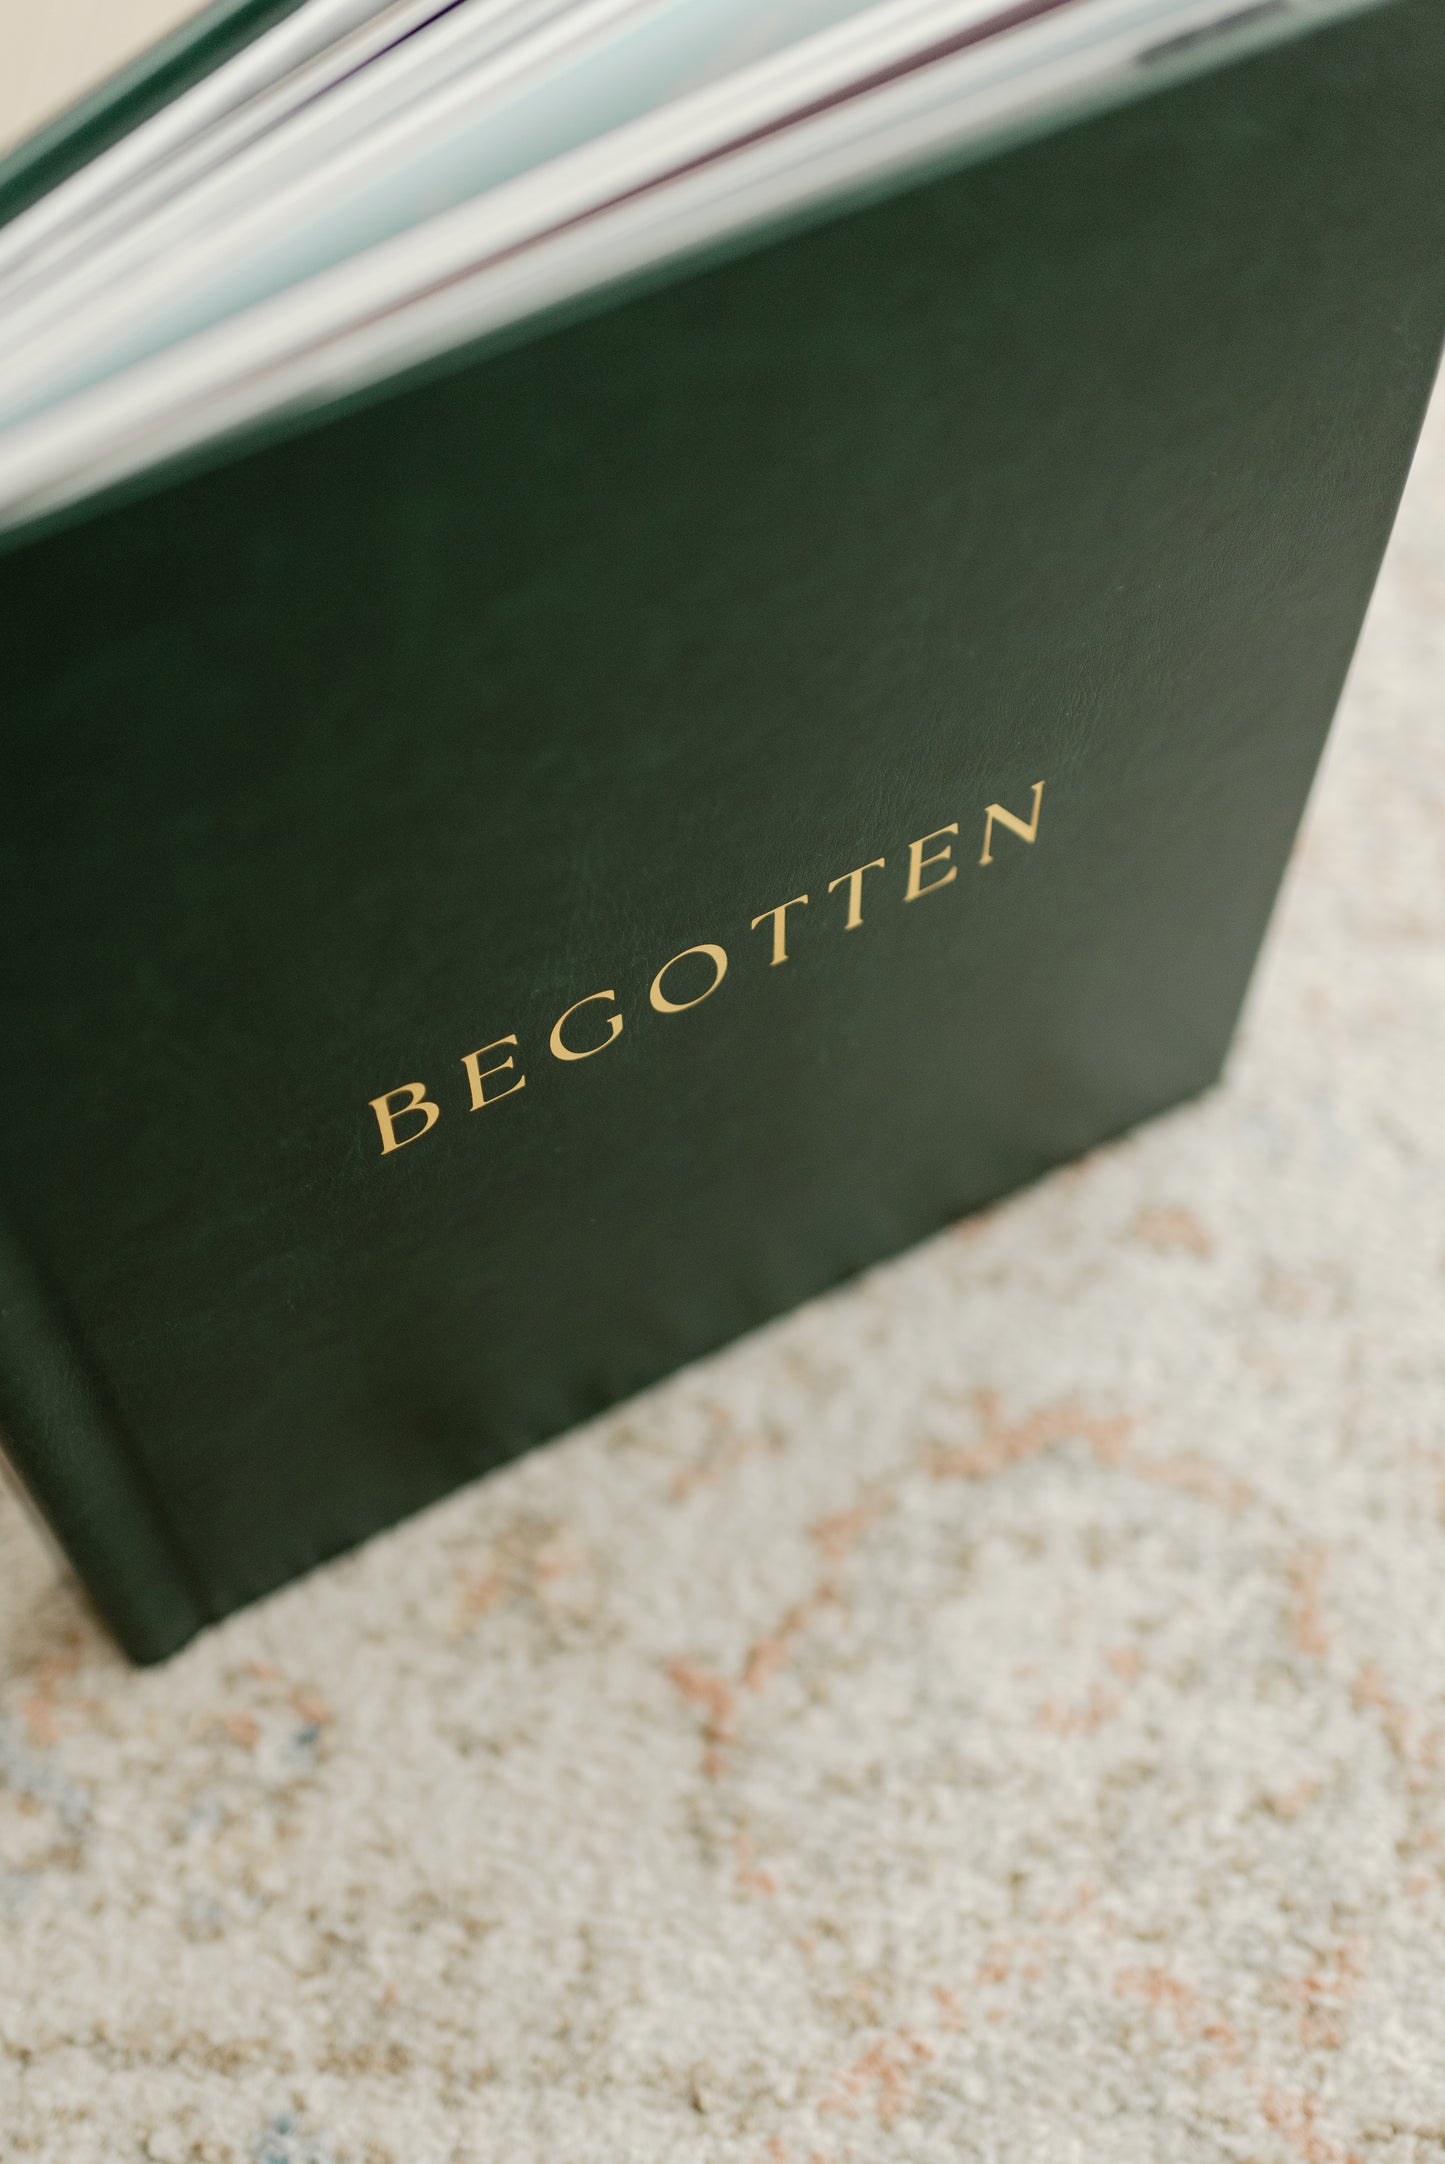 Begotten: Images of Jesus Christ